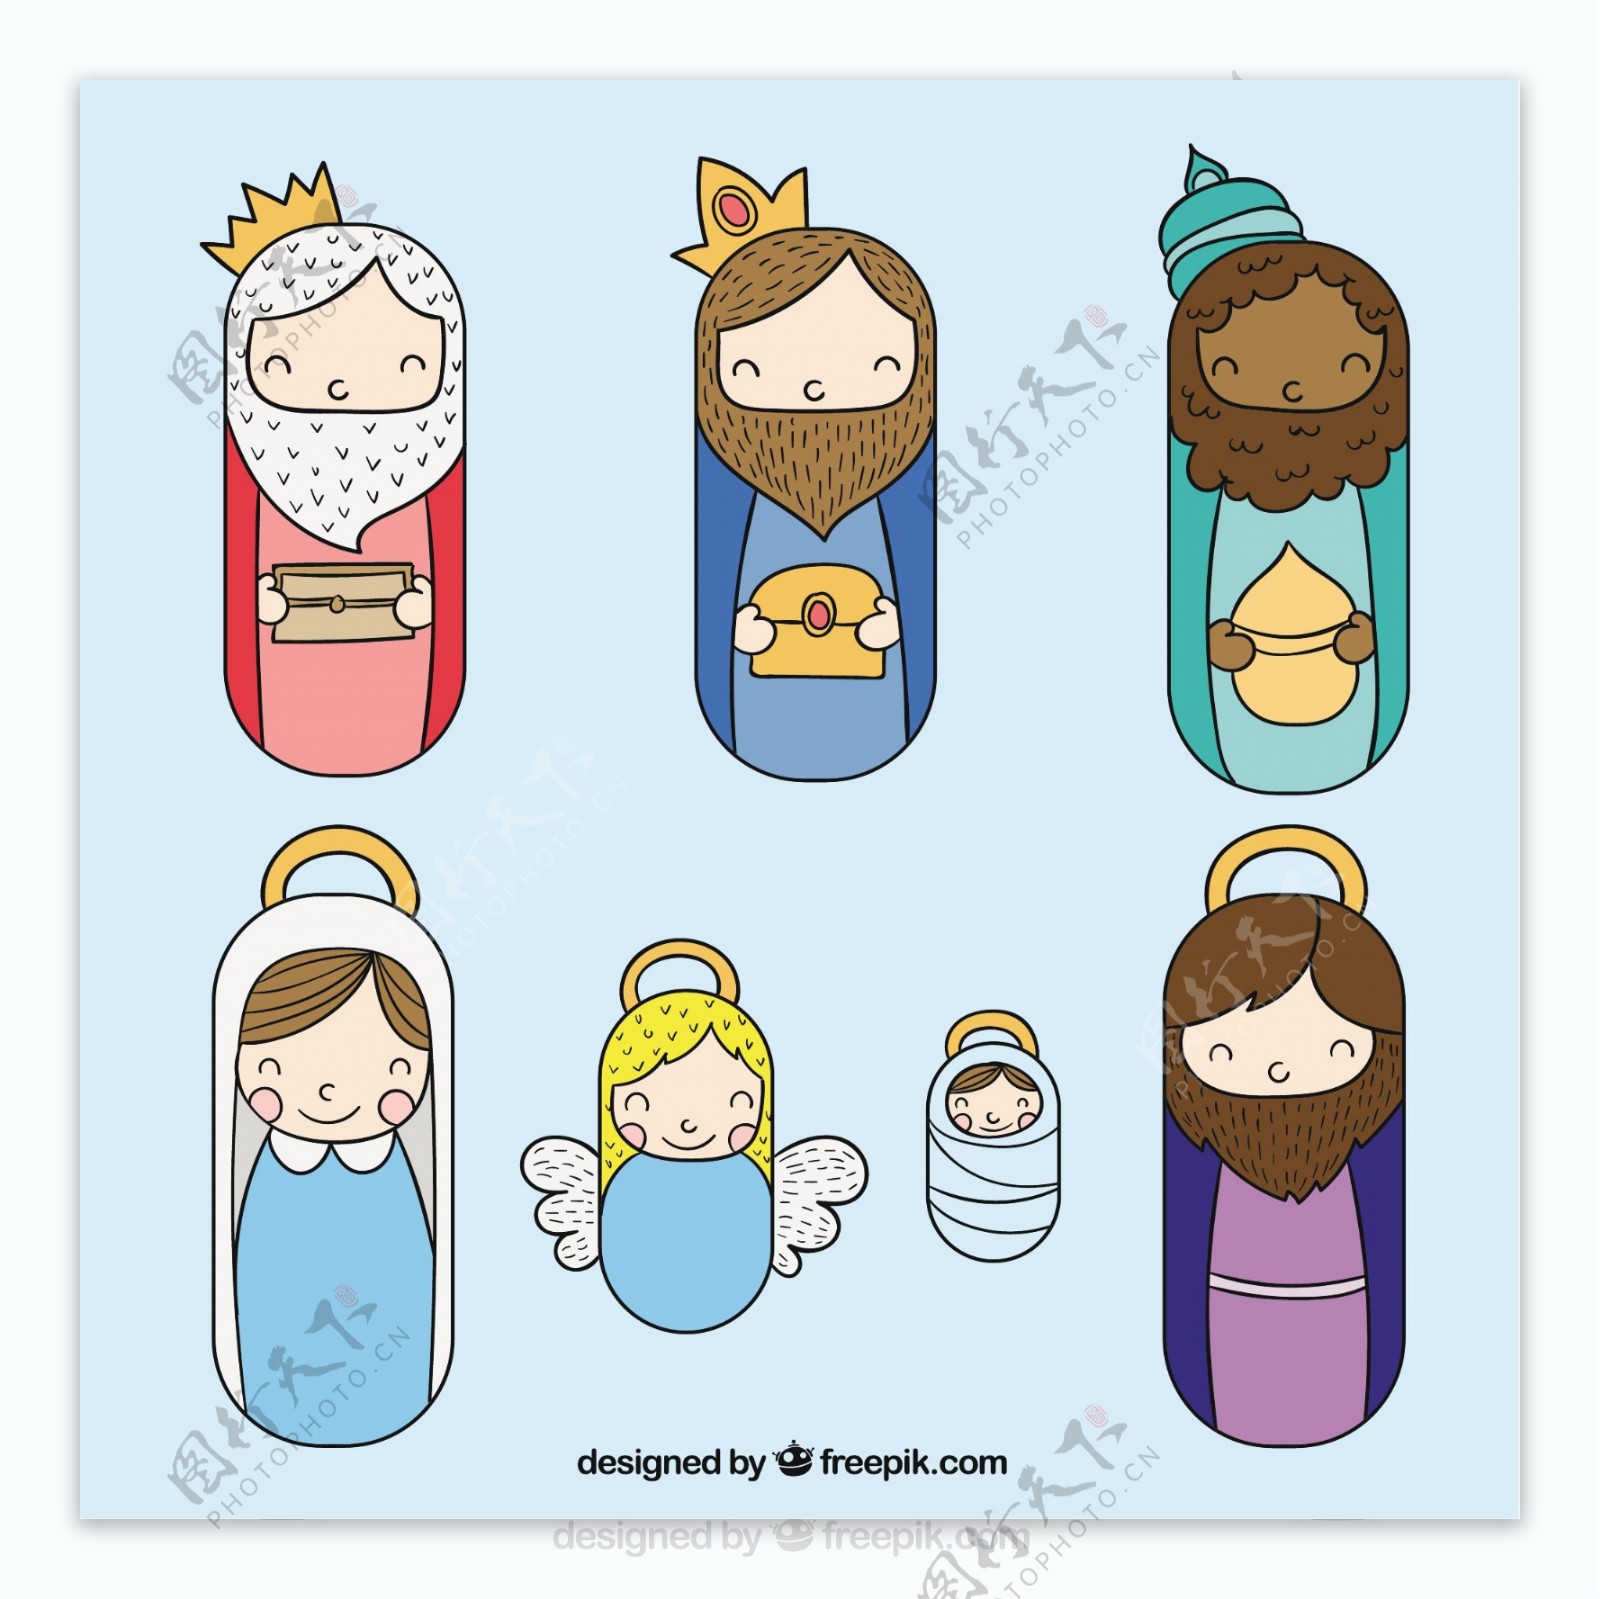 耶稣诞生场景插图